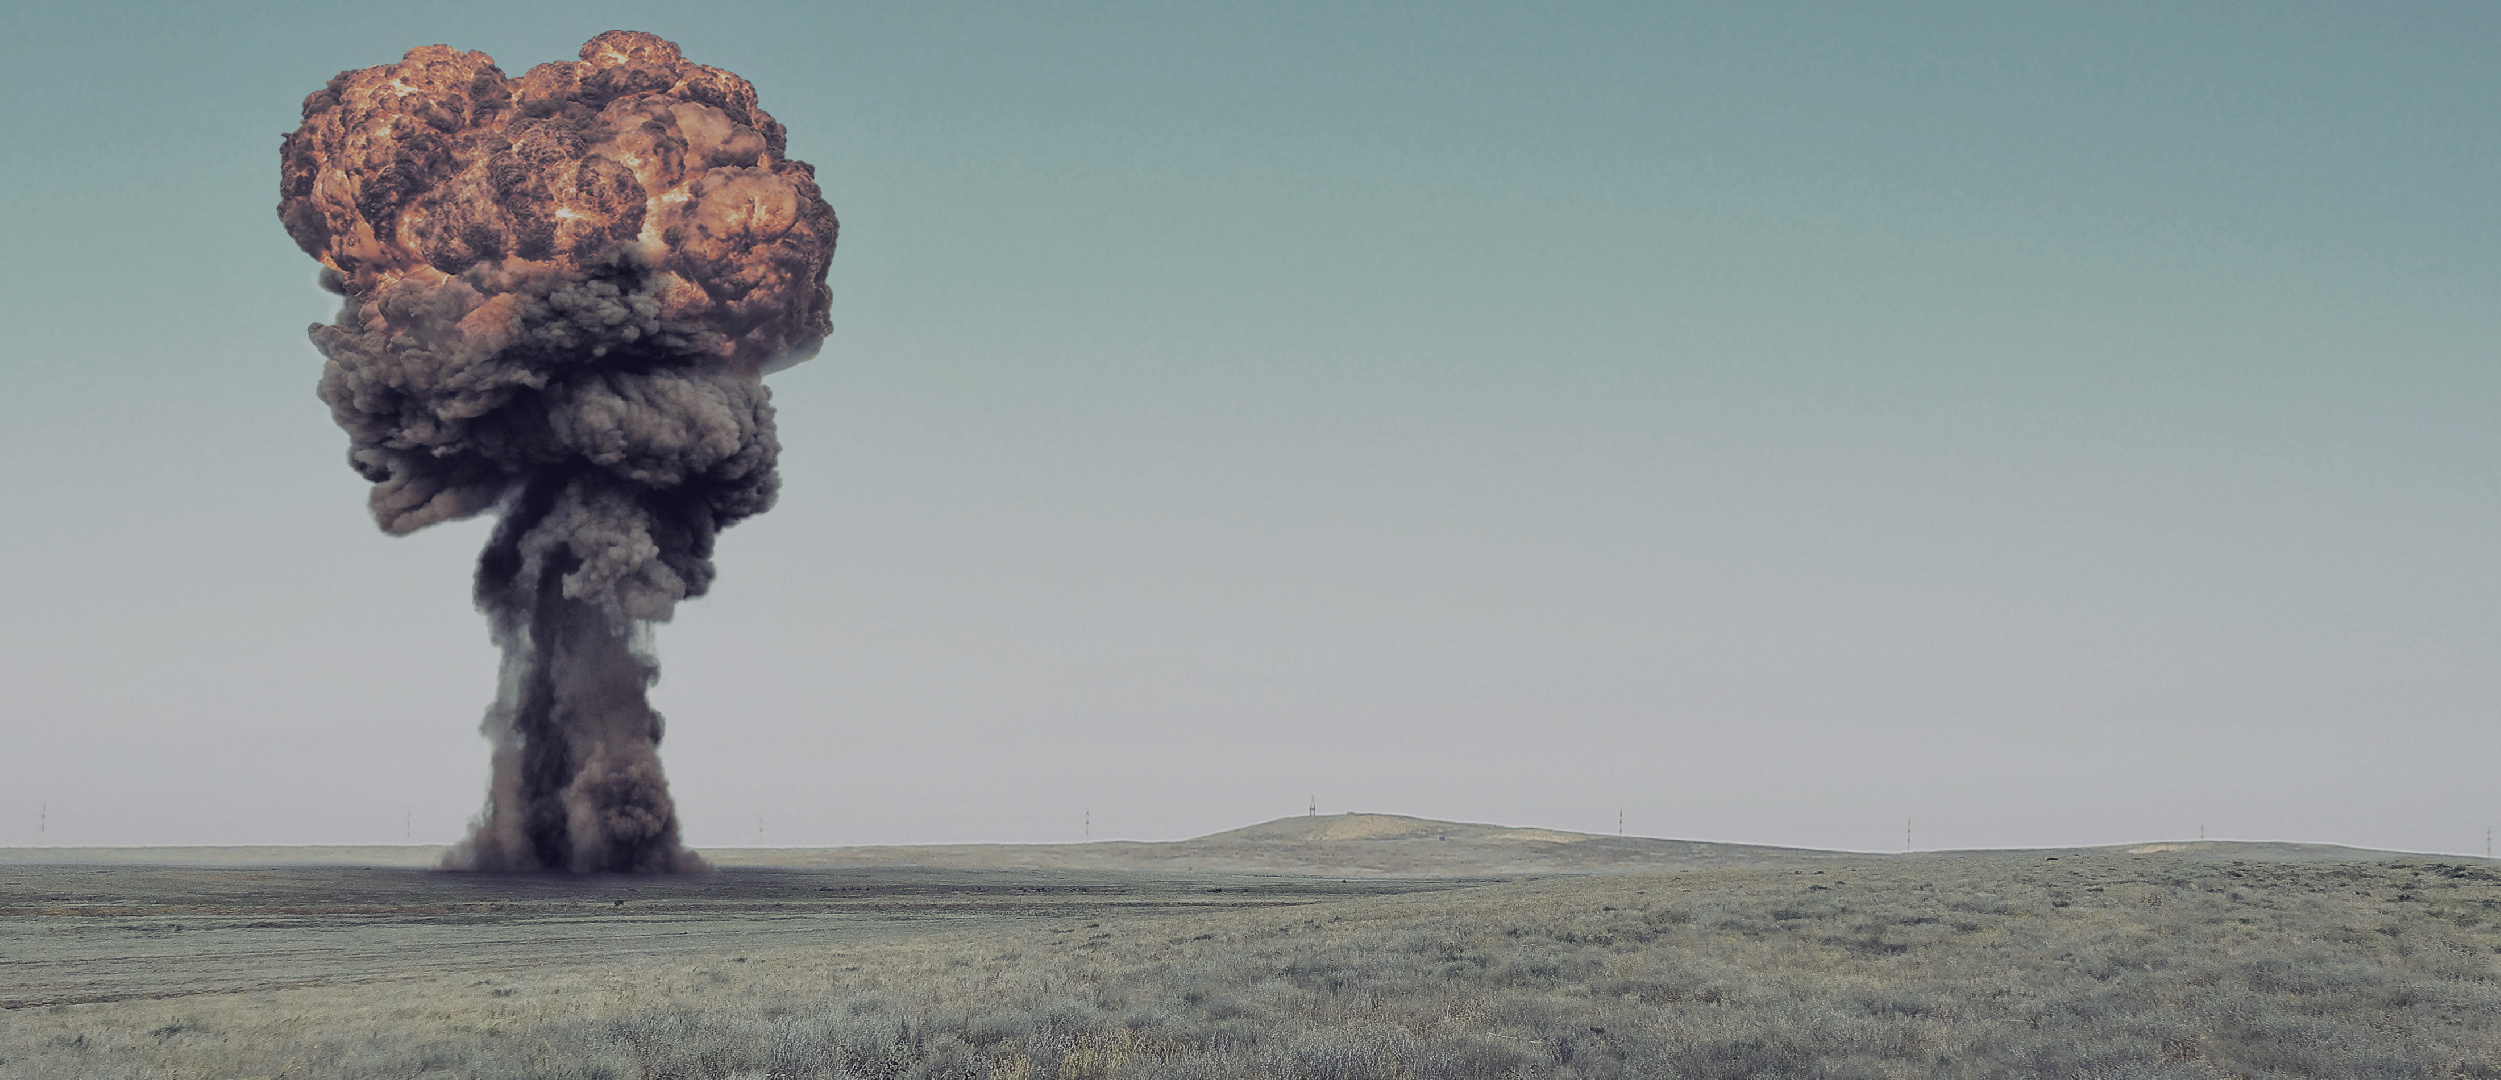 Всеобъемлющем запрещении ядерных испытаний. Полигон Невада. Подземный взрыв. Семипалатинск ядерные испытания. Ядерные испытания в пустыне Невада.